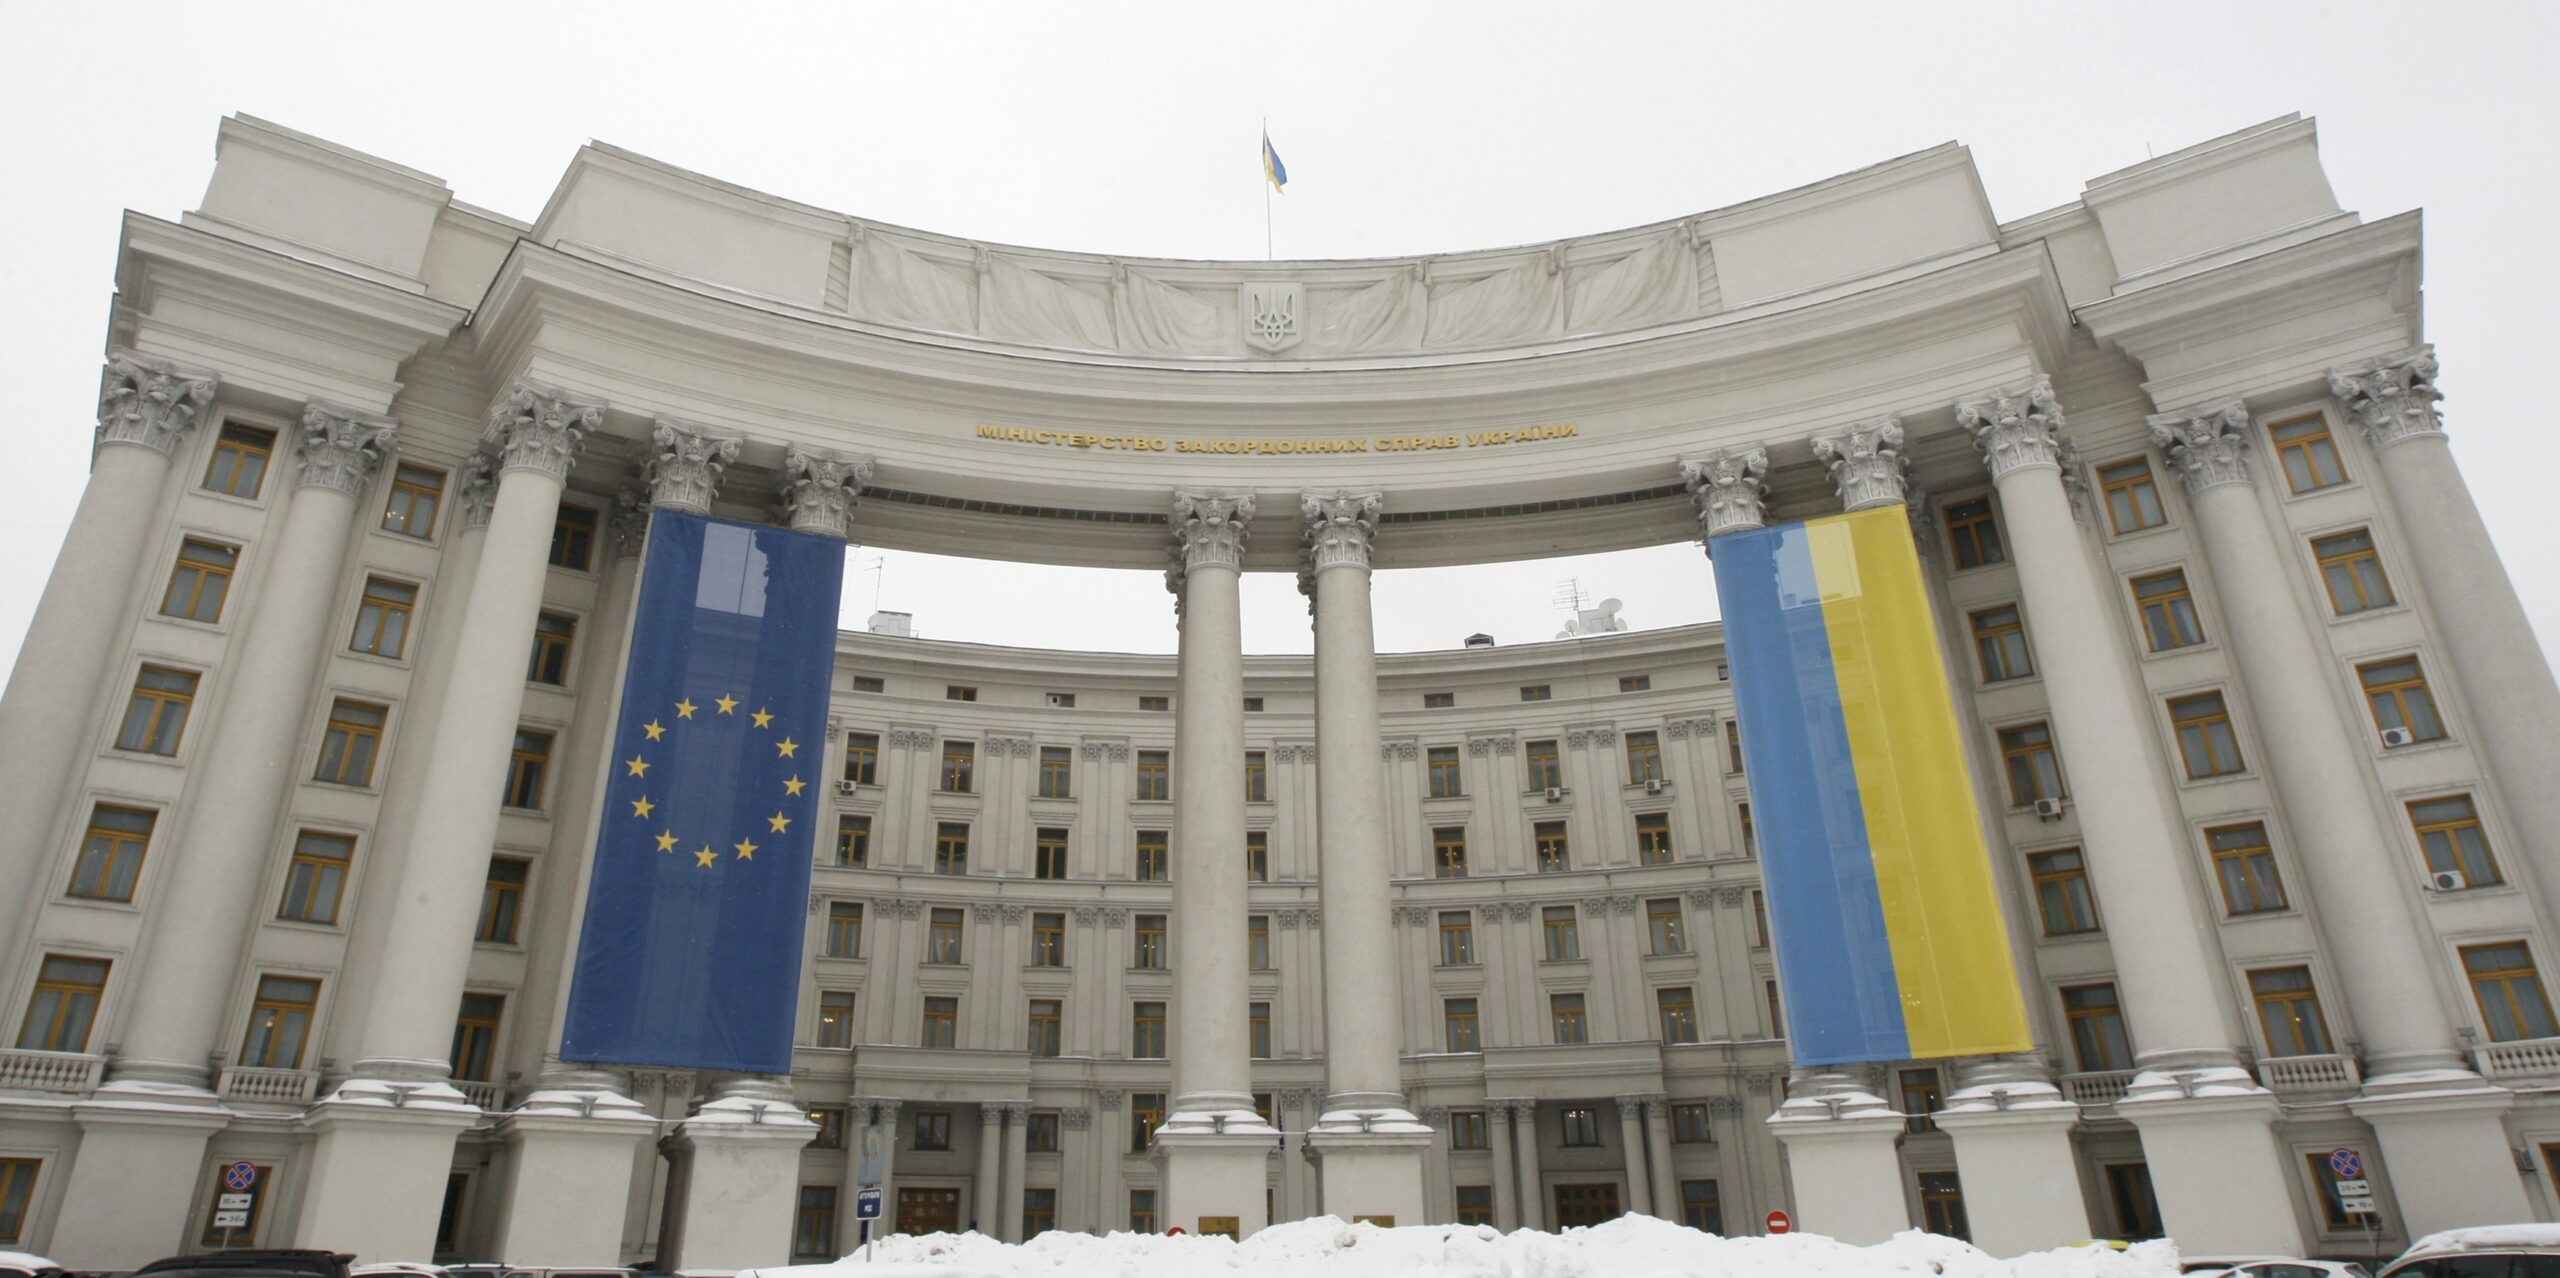 Украина призвала ввести санкции против РФ из-за разгона протестов